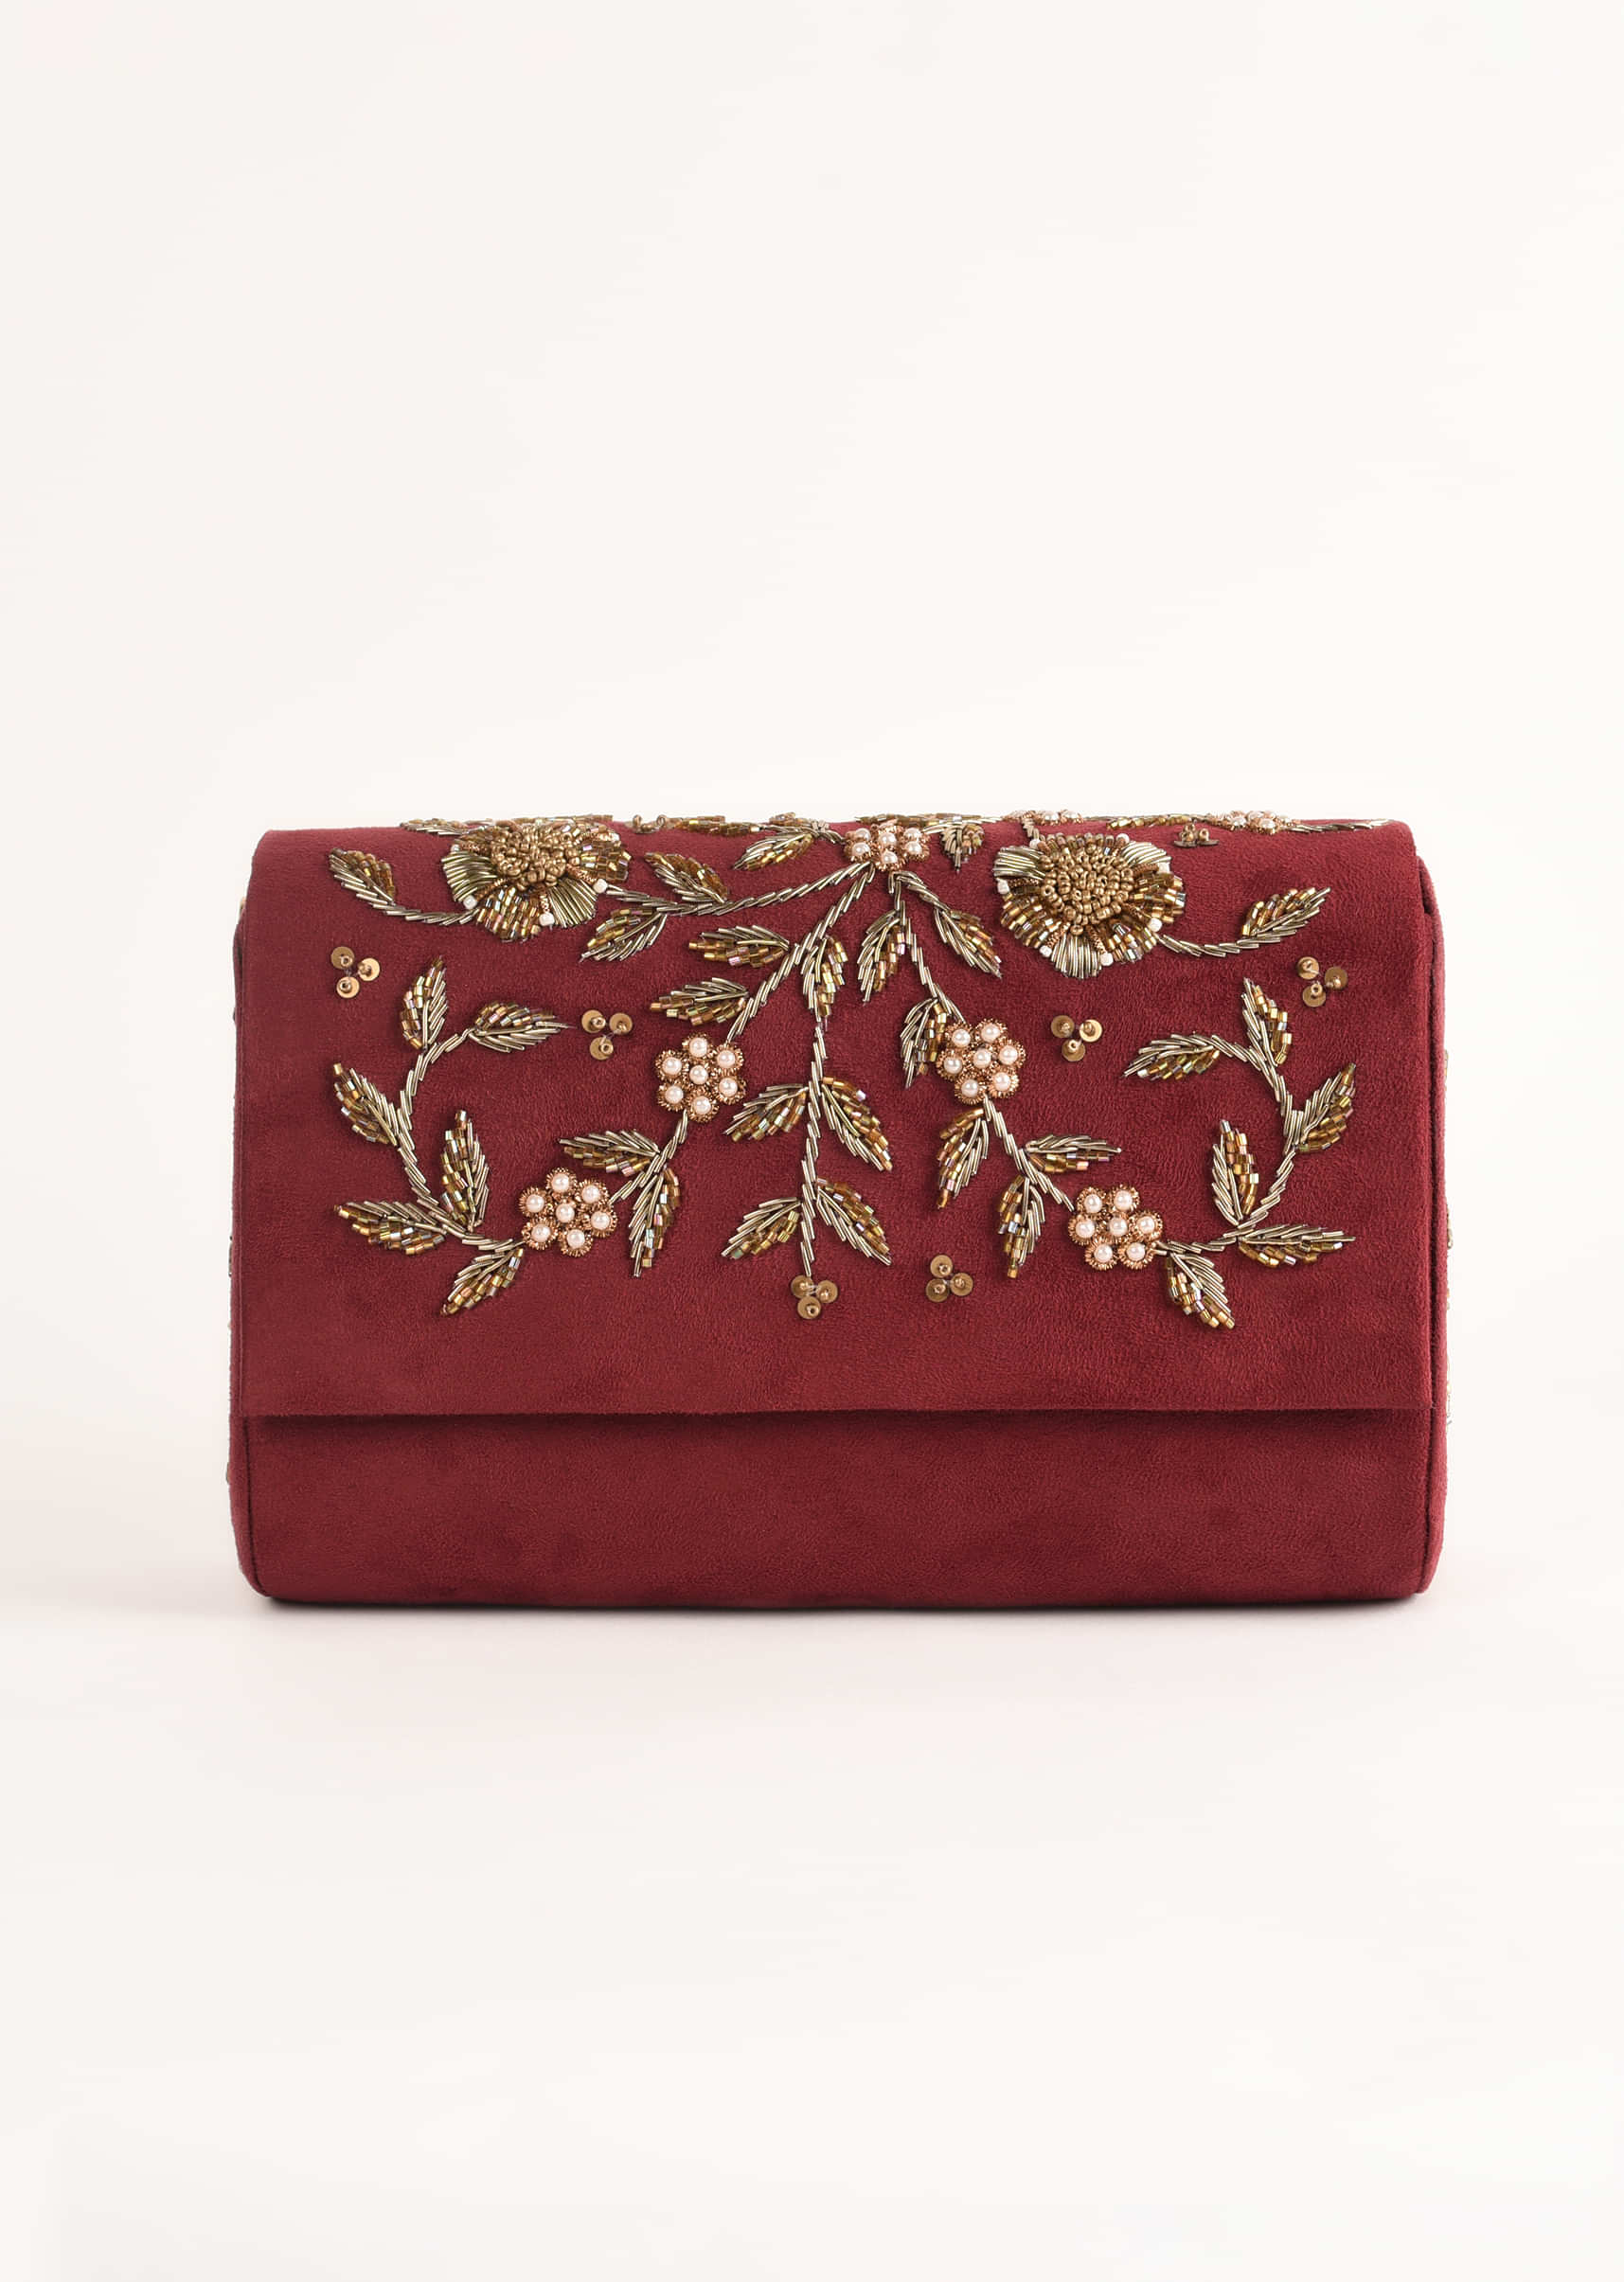 Burgundy Clutch In Suede With Zardosi Embroidered Floral Motifs Online - Kalki Fashion